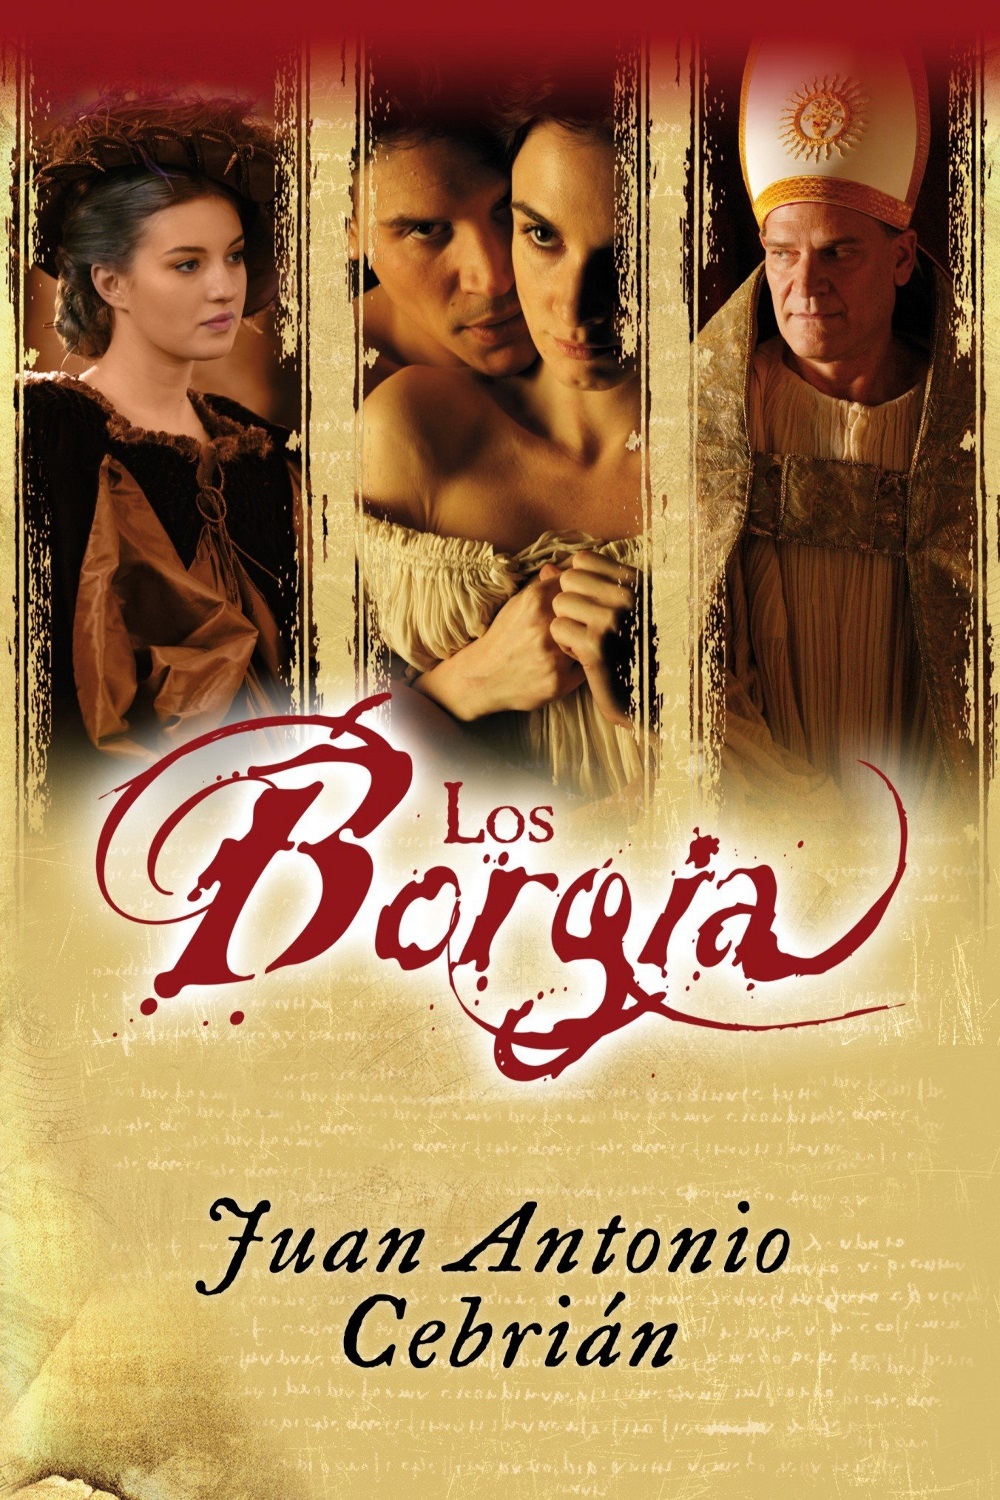 Los Borgia (2006)